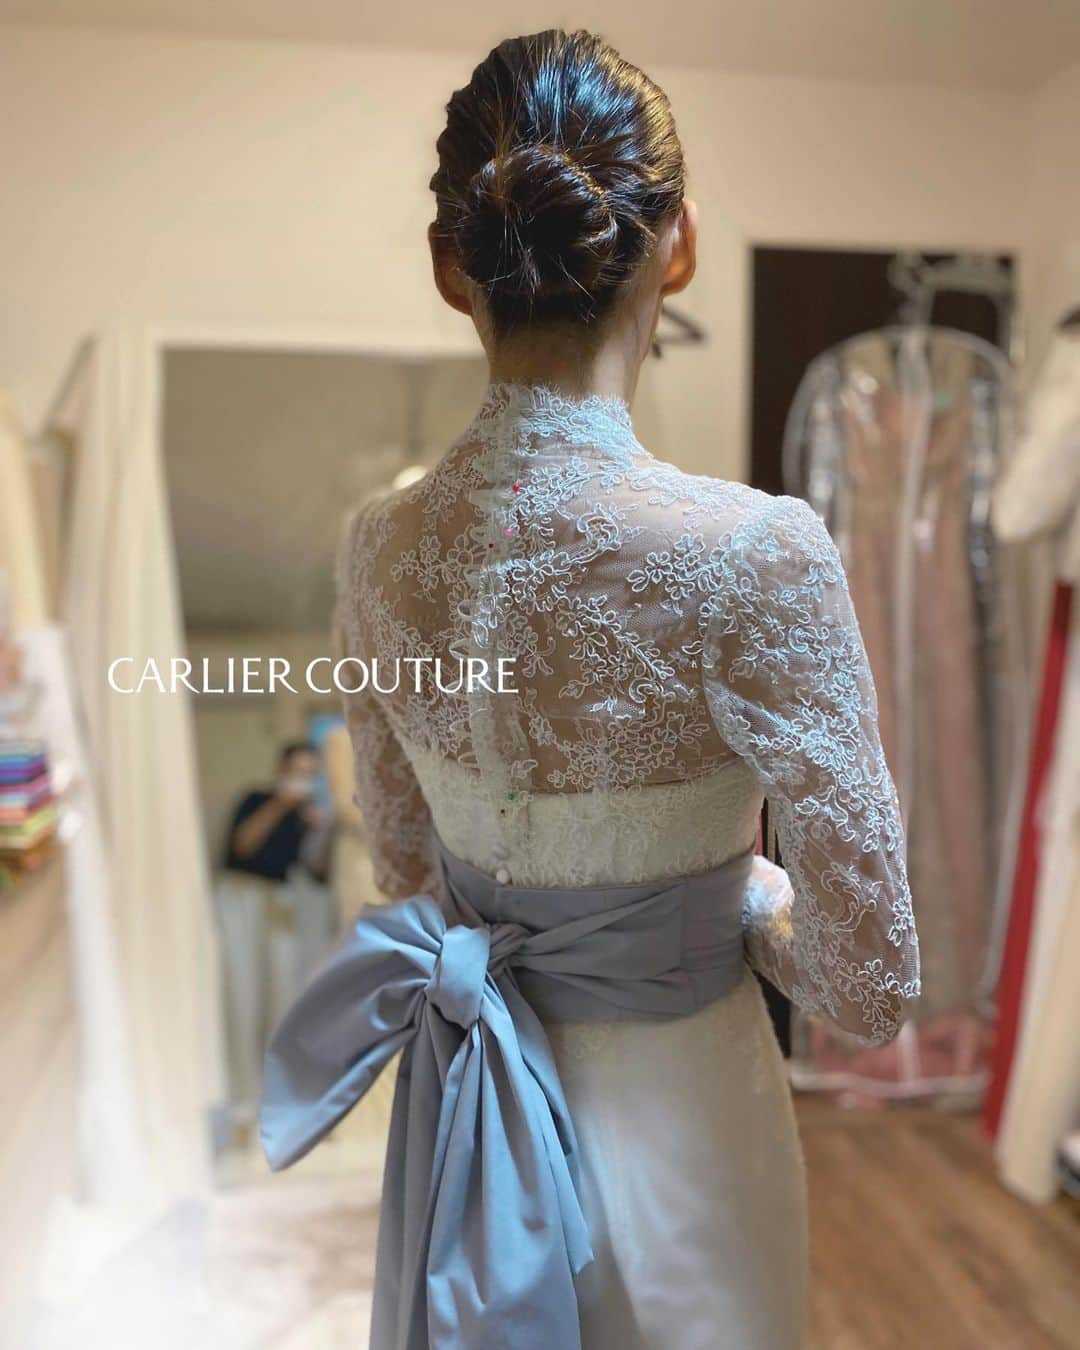 order dress カルリエ クチュールのインスタグラム：「. 【Carlier Couture's Bride】 making of a sash  ひとつ前のお写真の続きです。  イメージチェンジ用の、 ブルーのサッシュリボン💙  リゾートウェディングでしたので、 サッシュリボンは、かさばらず クルクルっとコンパクトに巻いて 持ち運べるもの、というリクエストでした。  なので、形が固定される作りリボンではなく、 浴衣のリボンみたいなイメージで 花嫁さま自ら結べるものにし、 片結び、蝶々結び、 色々アレンジ可能になりました。  お色はソフトなブルーグレー。 海でのロケーションフォトでも、 しっとりとオトナな雰囲気に💍  （お仮縫い、修正中のお写真も含まれております。）  ____  ⚠️ただいま @carlier_couture での オーダーのお承りは休止中でございます。  休止前にオーダーいただいたものを まだまだpostさせて頂きますが、 ご了承くださいませ🙇🏻‍♀️🙇🏻‍♀️  ____  現在のメインはこちら @carlier_couture_deuxieme   ぜひfollowしていただけますと 励みになります❤️‍🔥❤️‍🔥 （ストーリーは最近↑がメインです）  イメージコンサルティング 個別メニューも8月いっぱいまで スケジュールアップしております✨ HPよりメニュー詳細、ご予約、 お待ちいたしております🫶🏻  +++—————————————————-+++  お客様のお写真の無断転載は固くお断り致します。 NO COPYING PLEASE / 禁止转载  +++—————————————————-+++  #マーメイドドレス #オーダーマーメイドドレス #リゾートウェディング #リゾート婚 #オーダーウェディングドレス #オーダードレス」